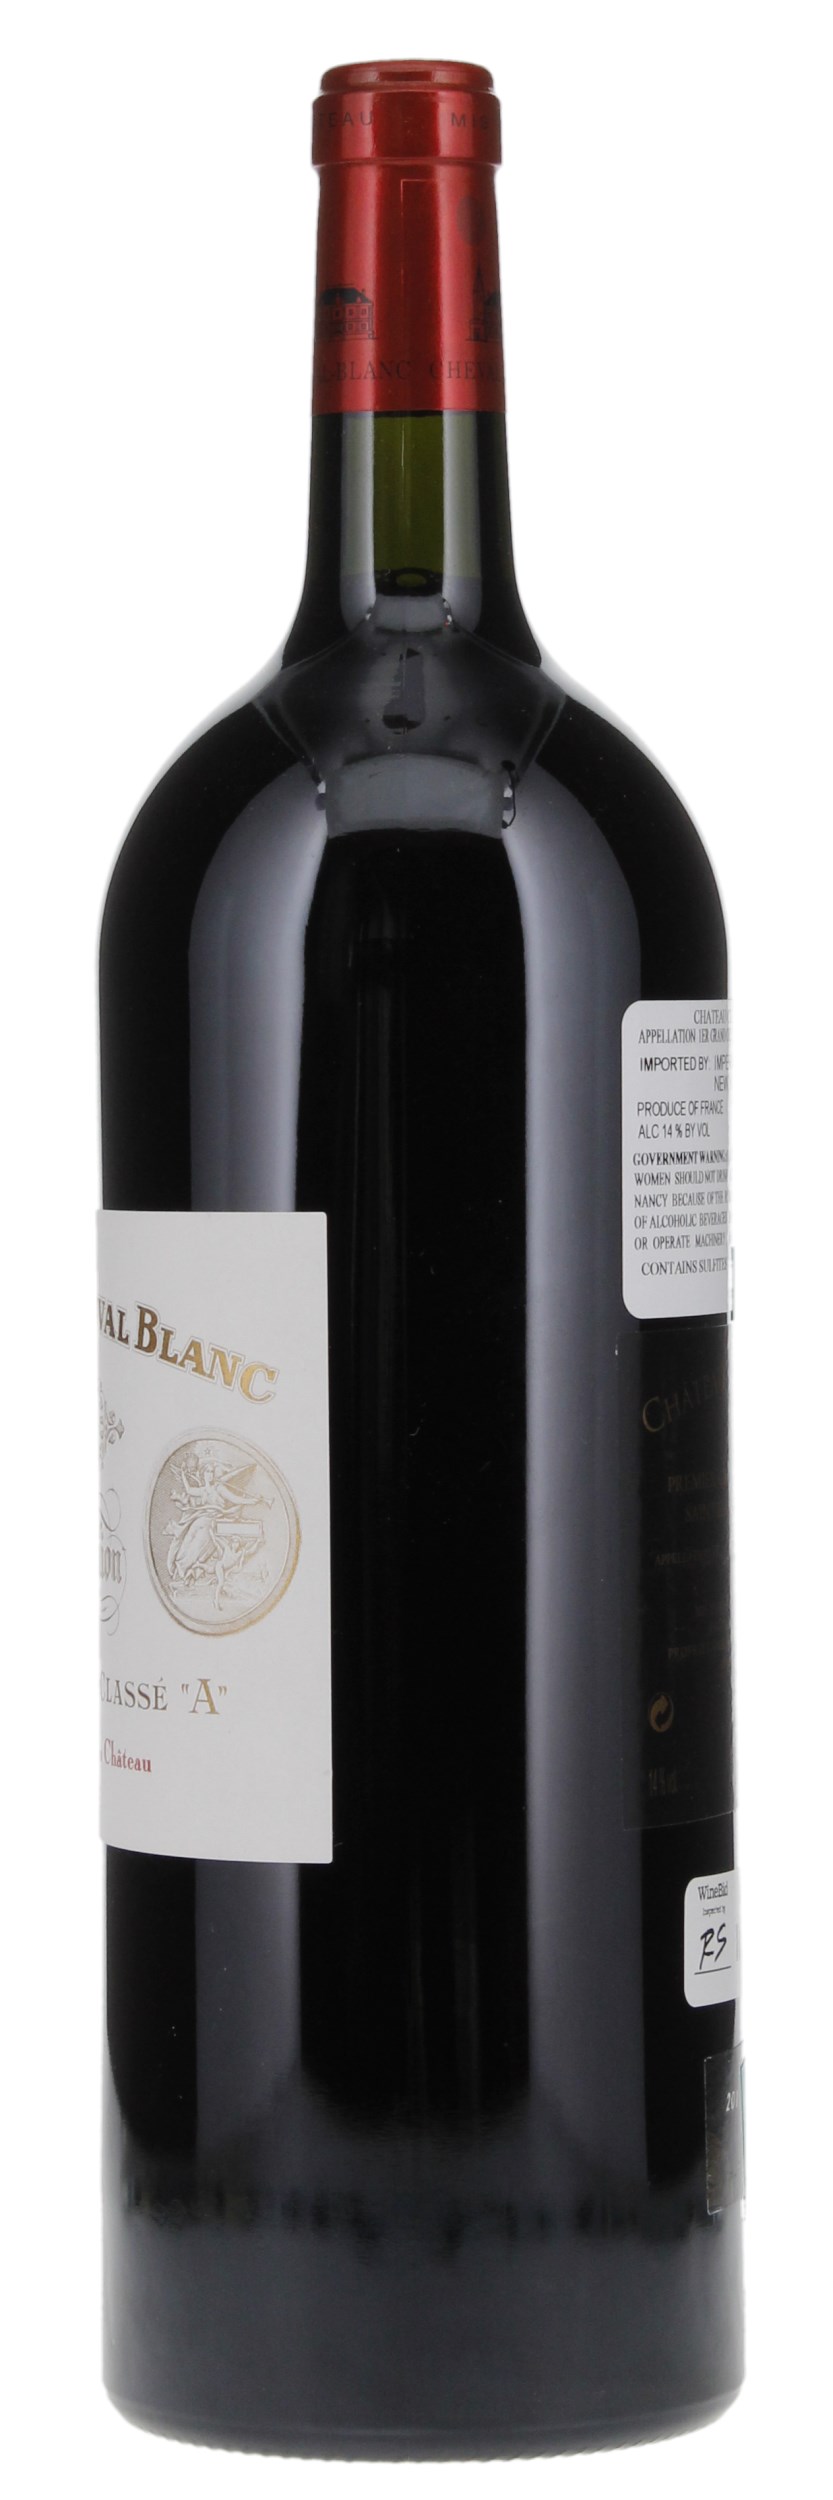 2011 Château Cheval-Blanc, 1.5ltr